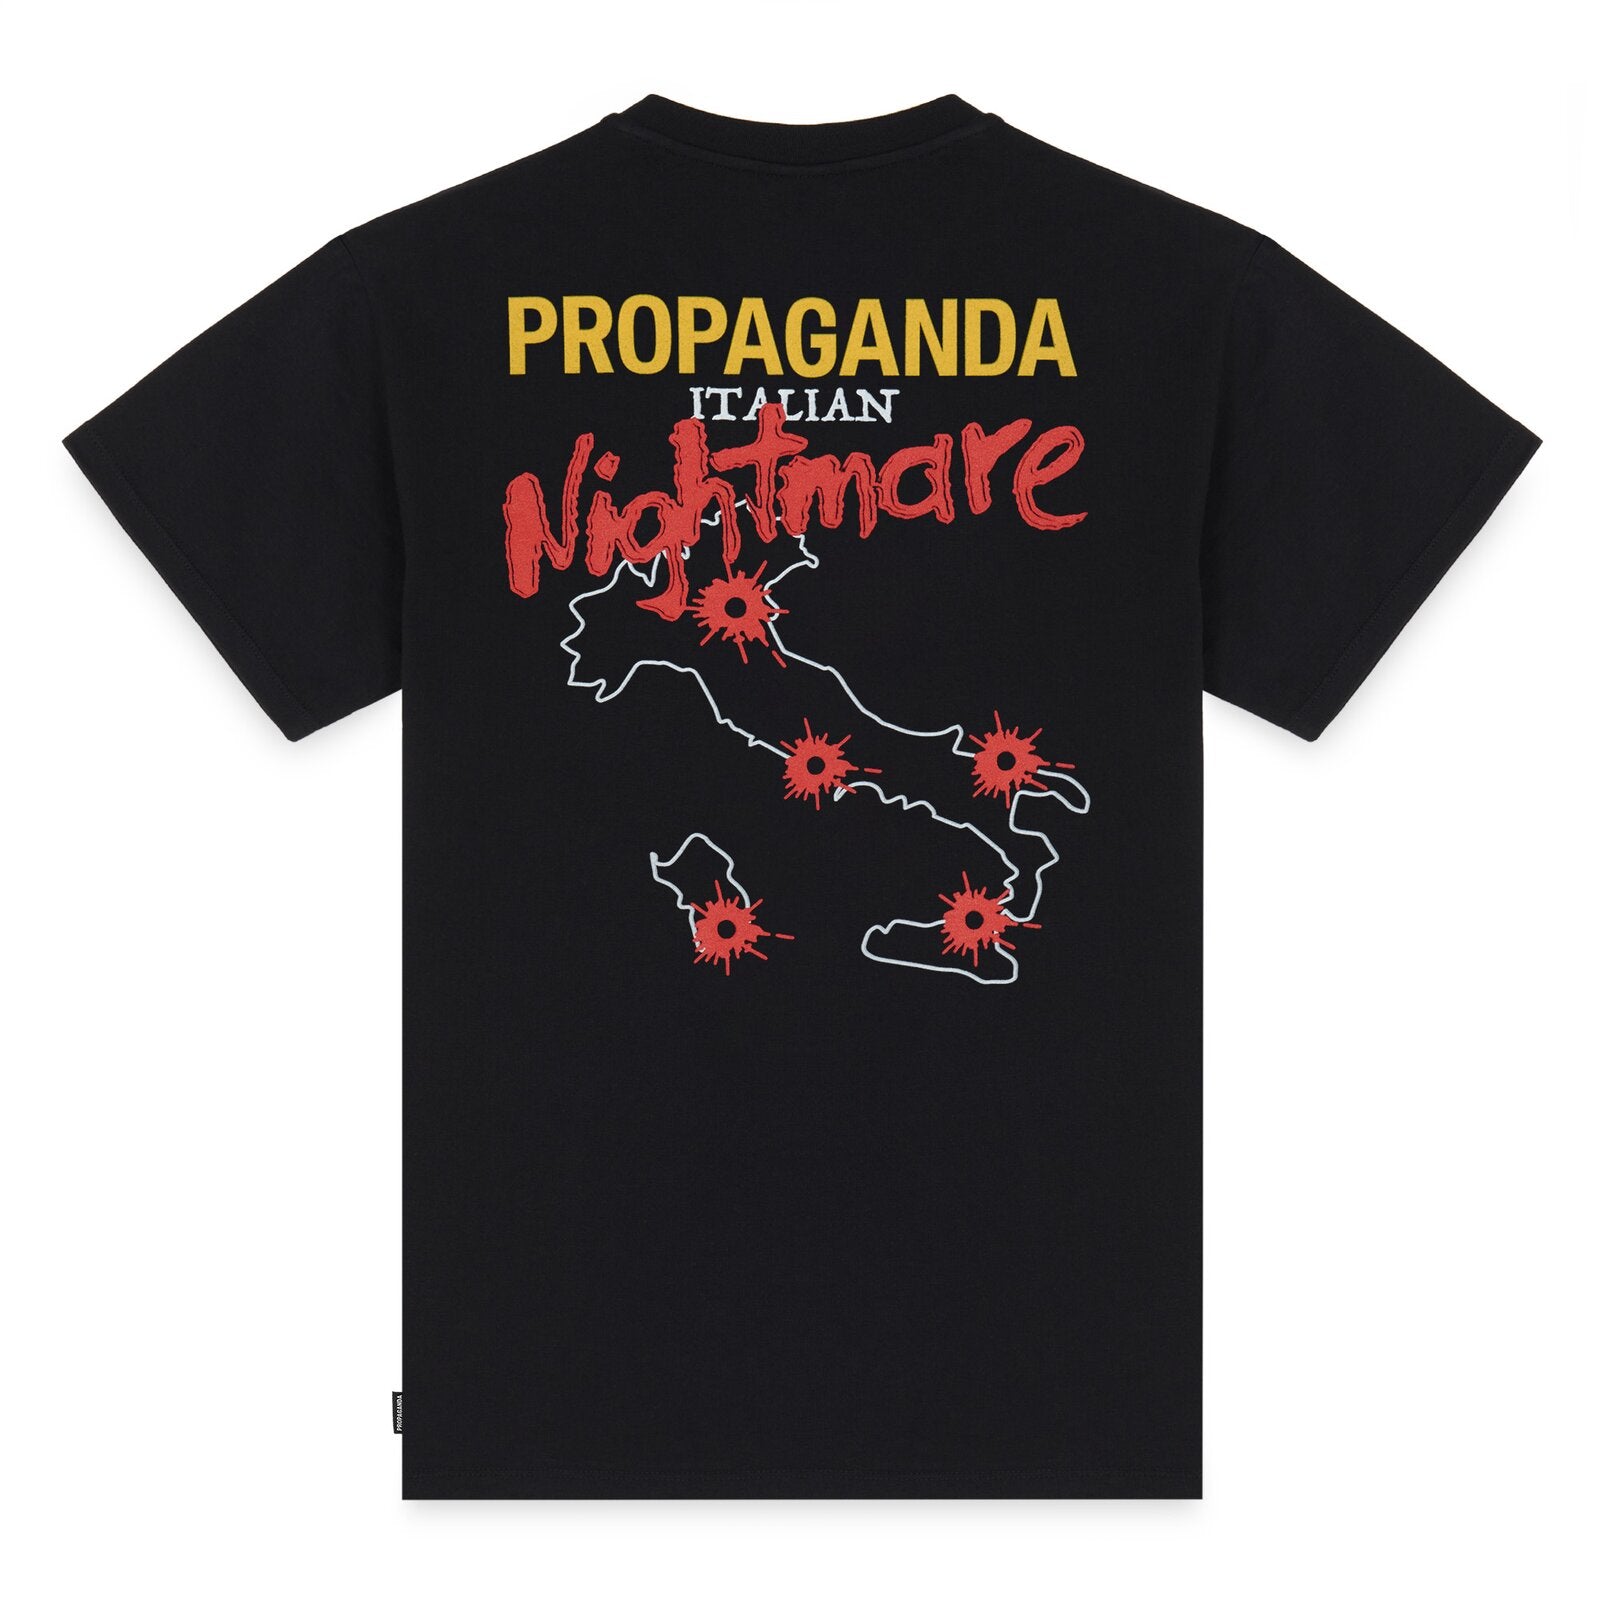 Propaganda uomo t-shirt 23FWPRTS855